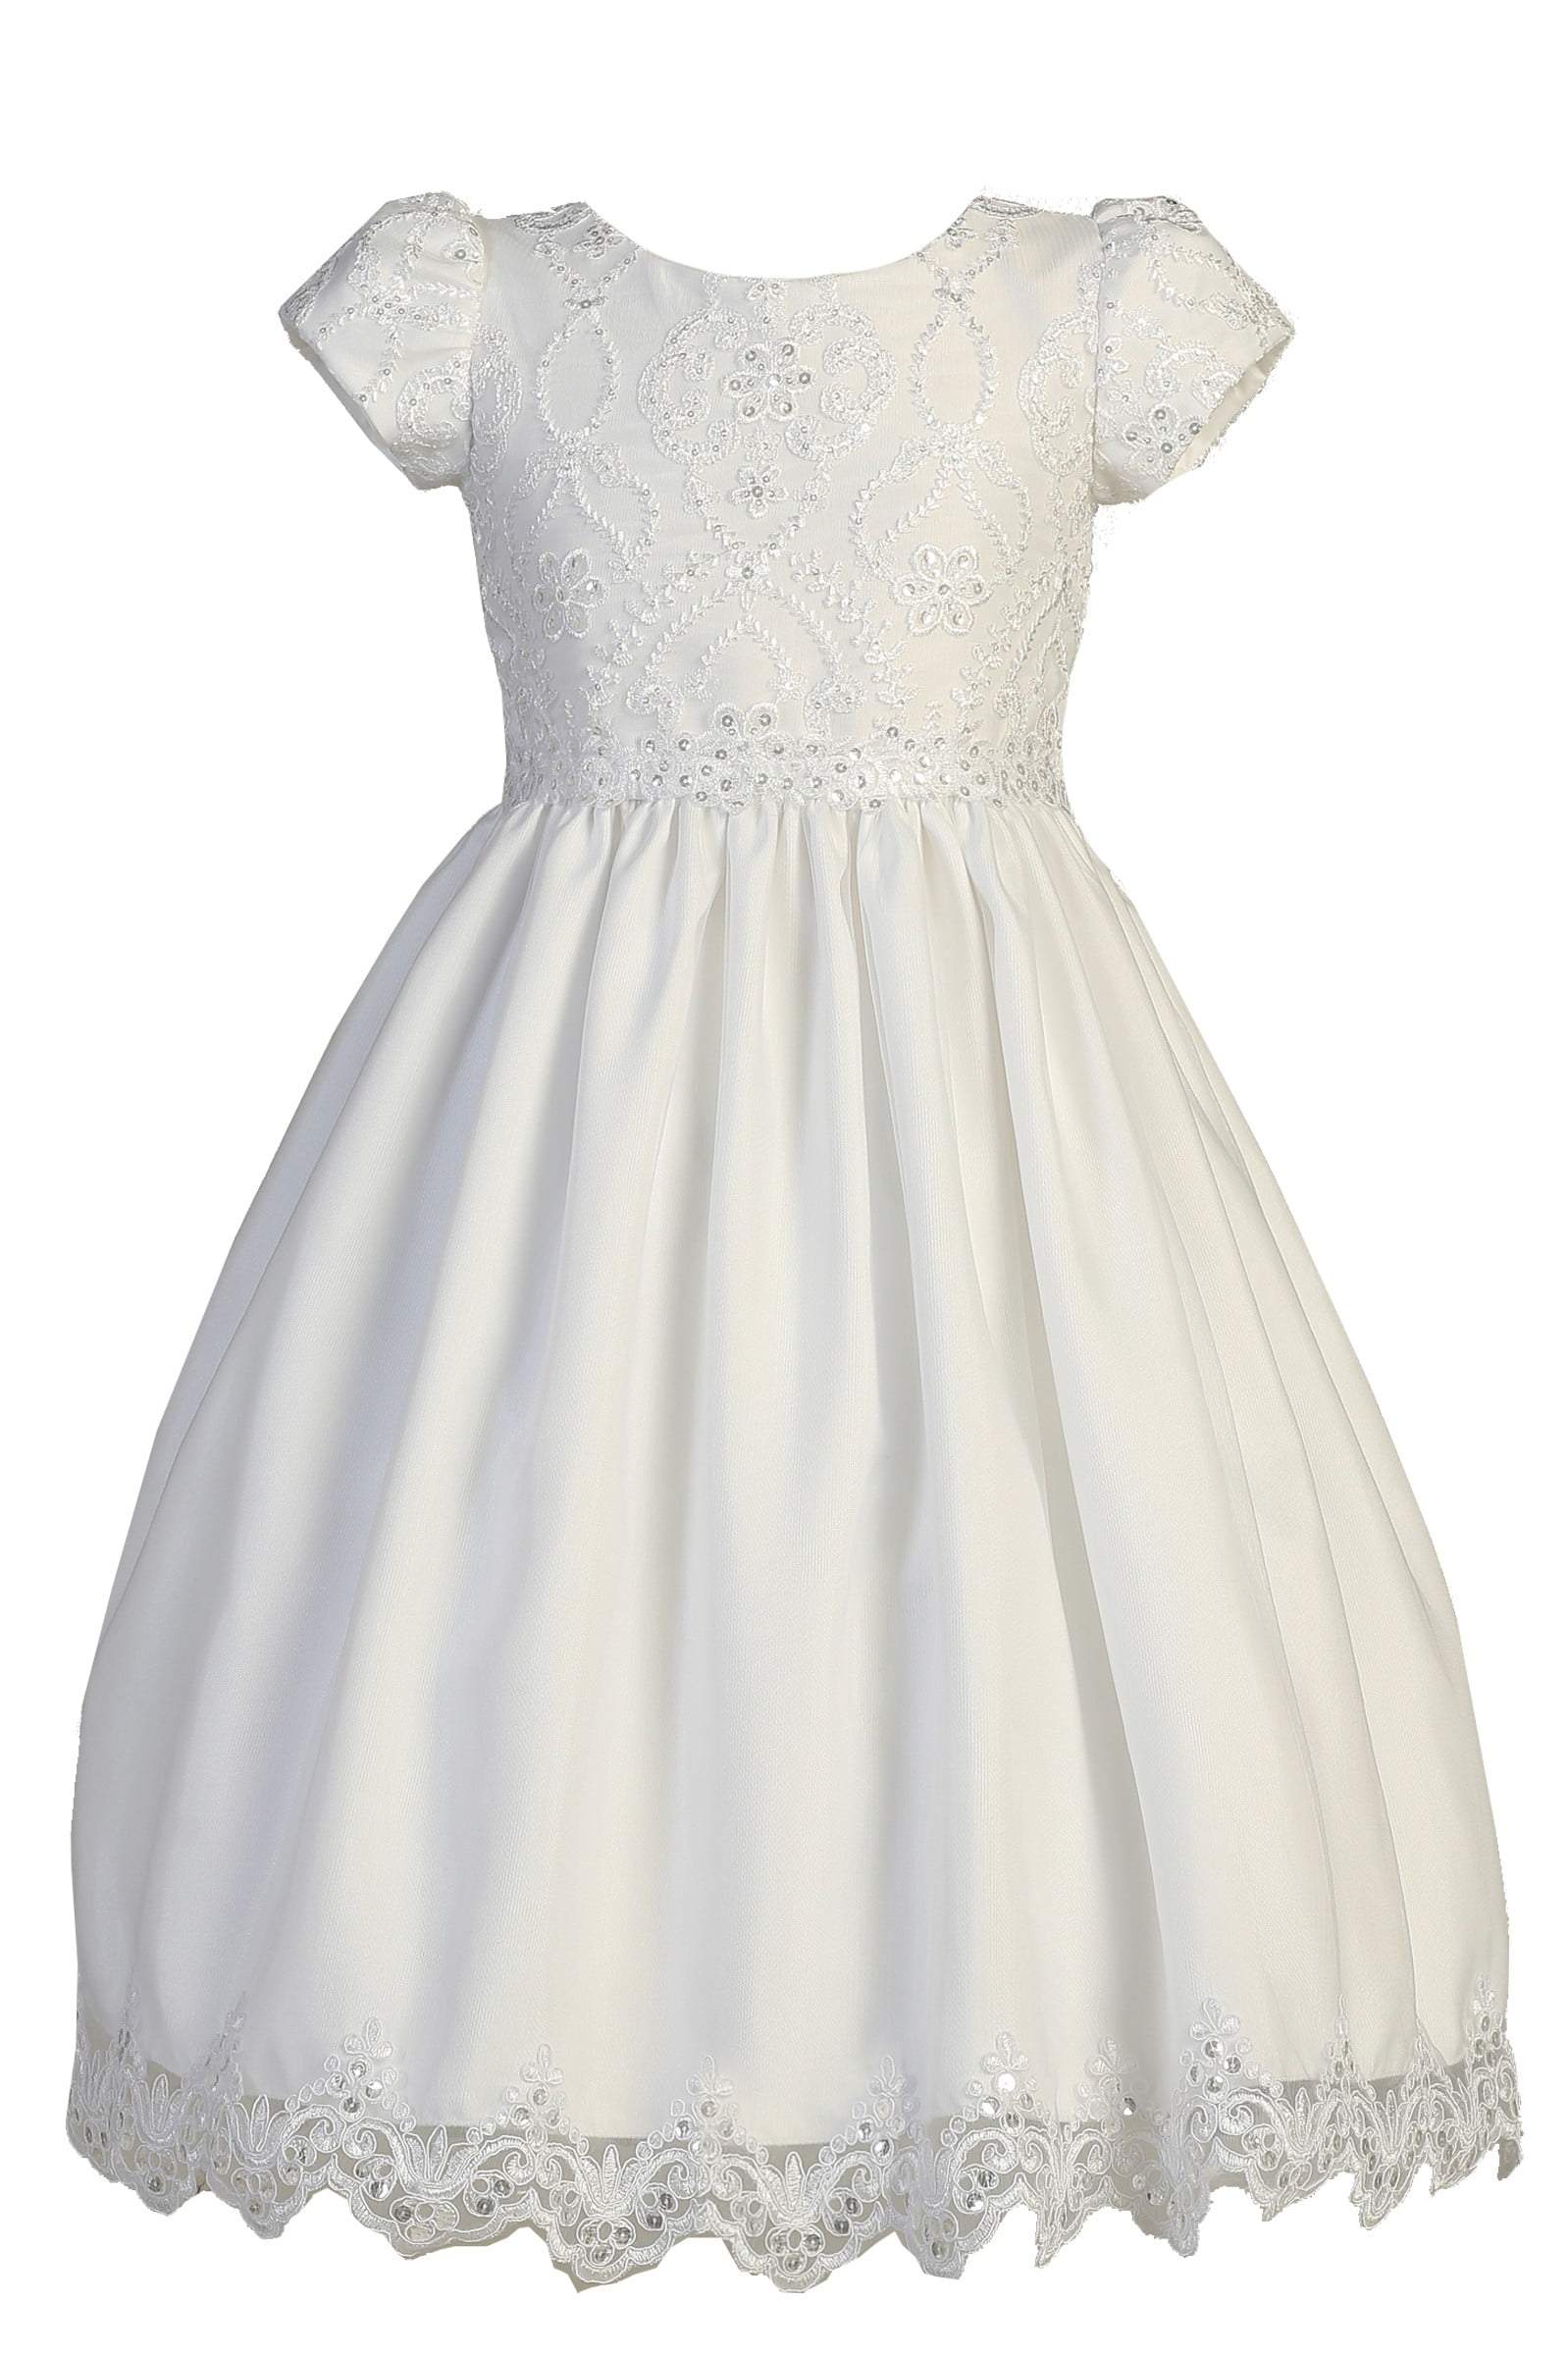 White Short Tulle Dress for Girls